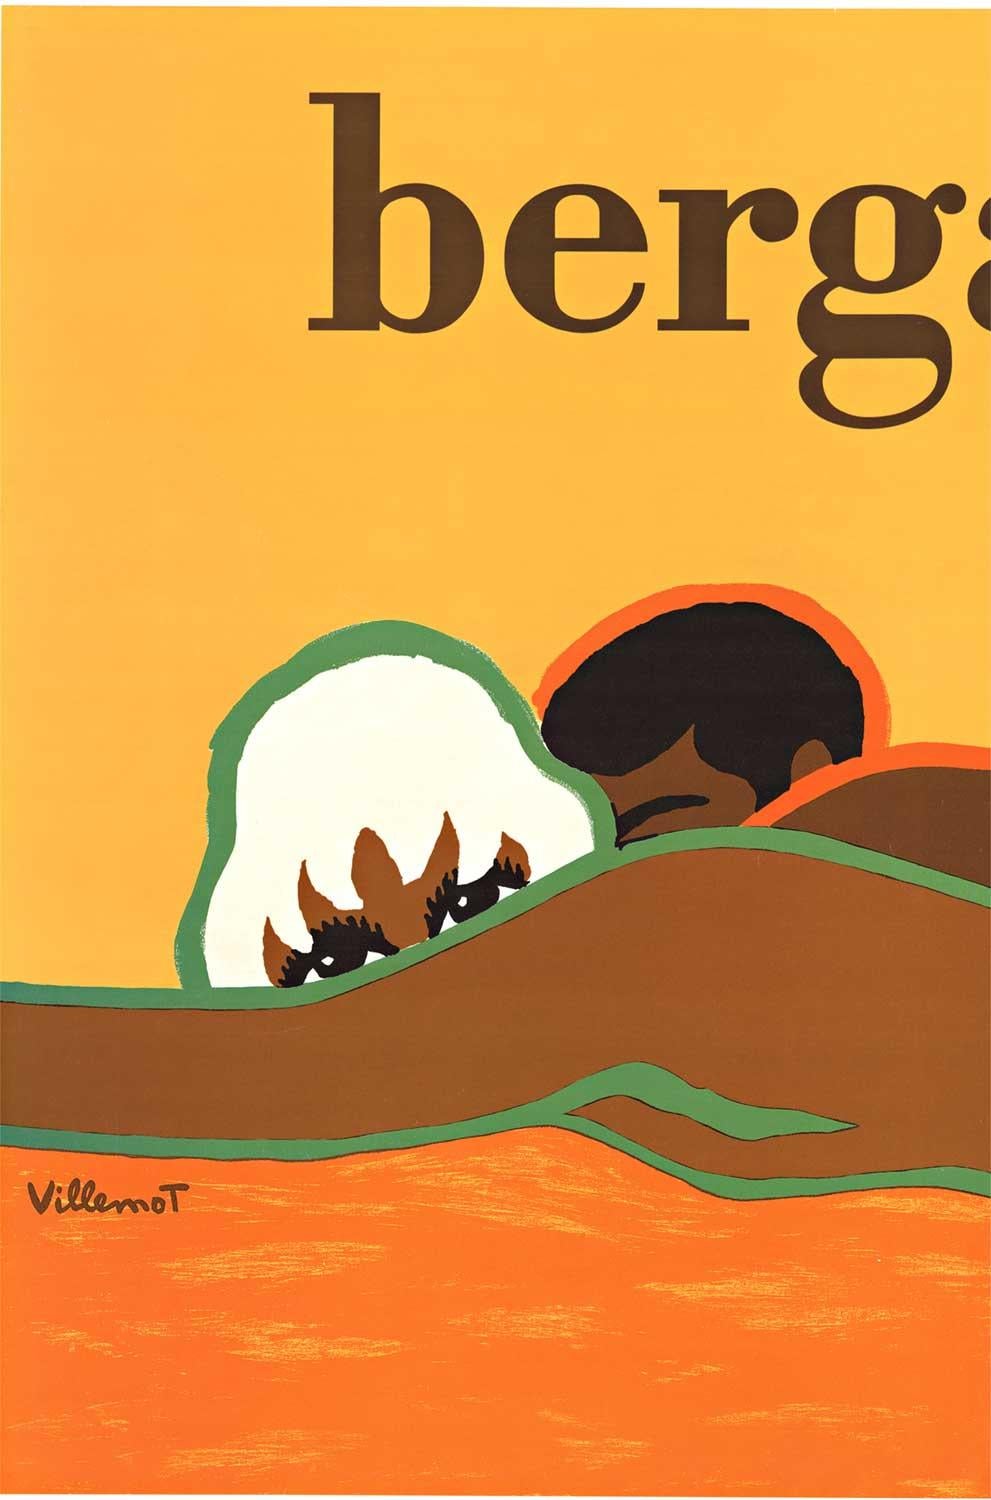 Affiche vintage d'origine Bergasol  Villemot  Écran solaire - Pop Art Print par Bernard Villemot